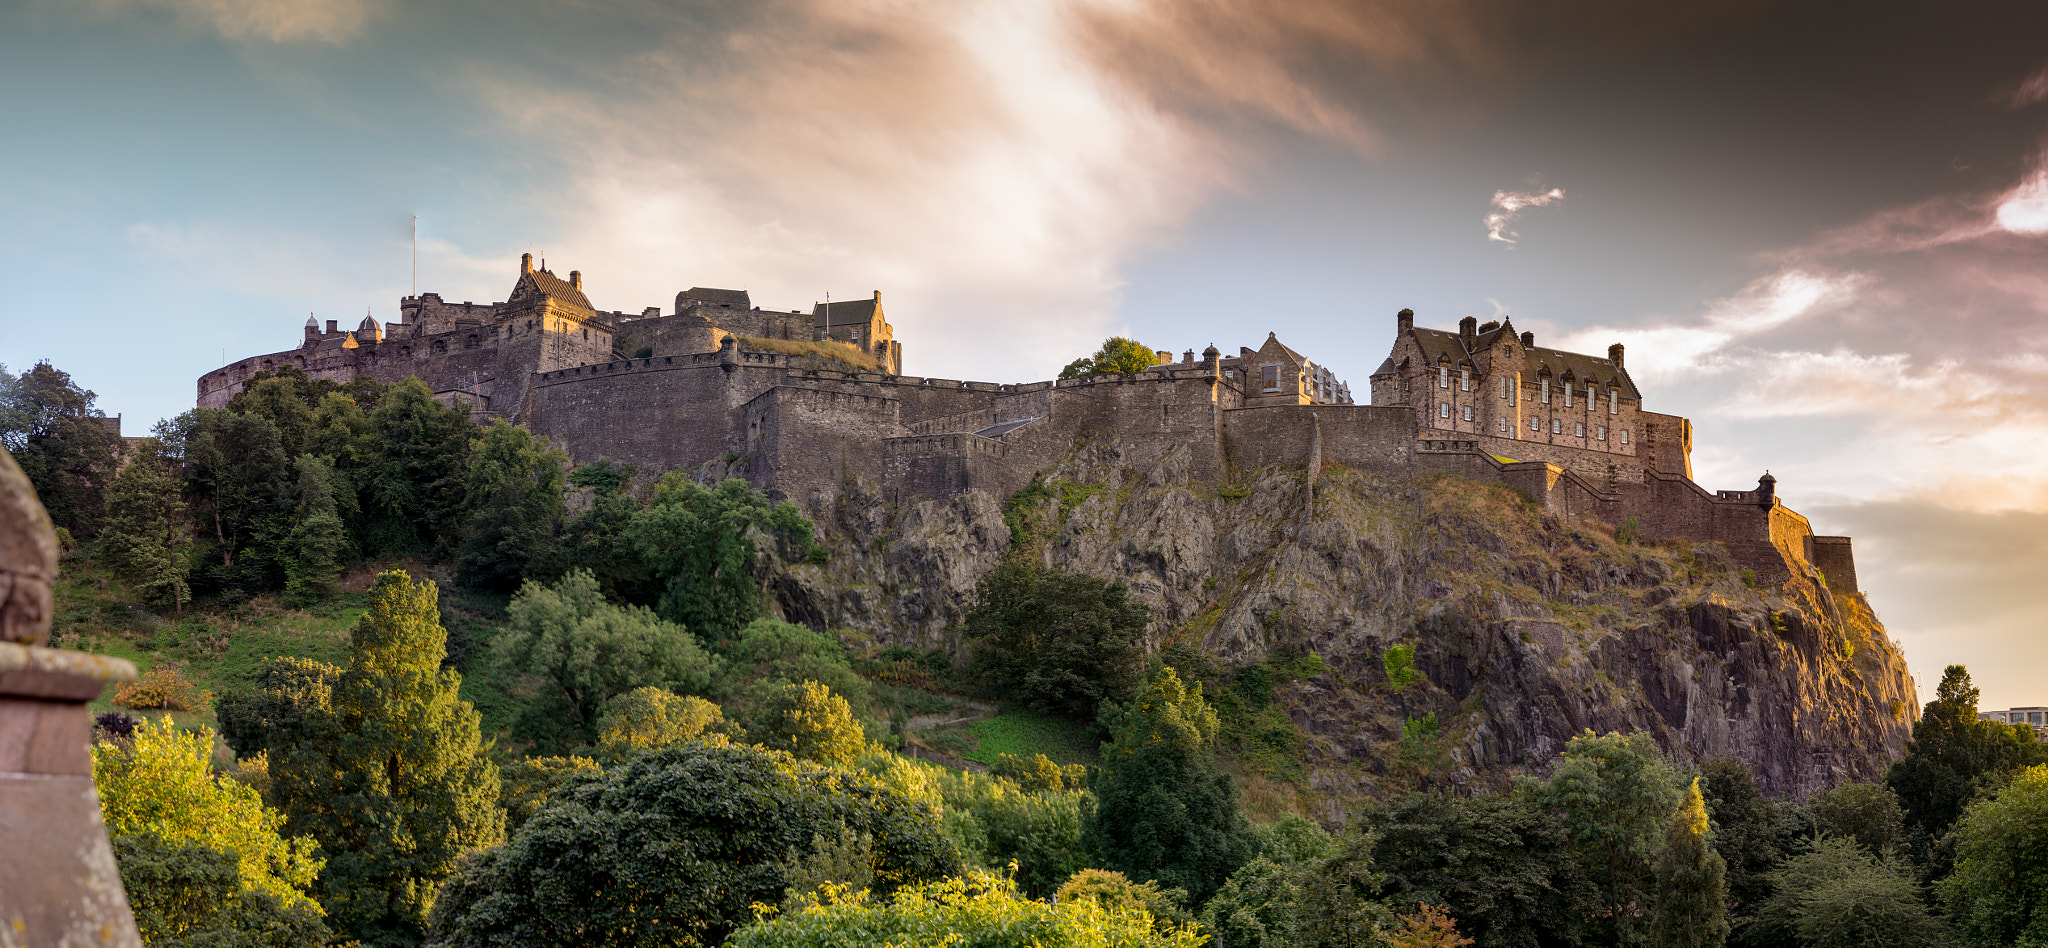 Sony a7 sample photo. Edinburgh castle skyline photography